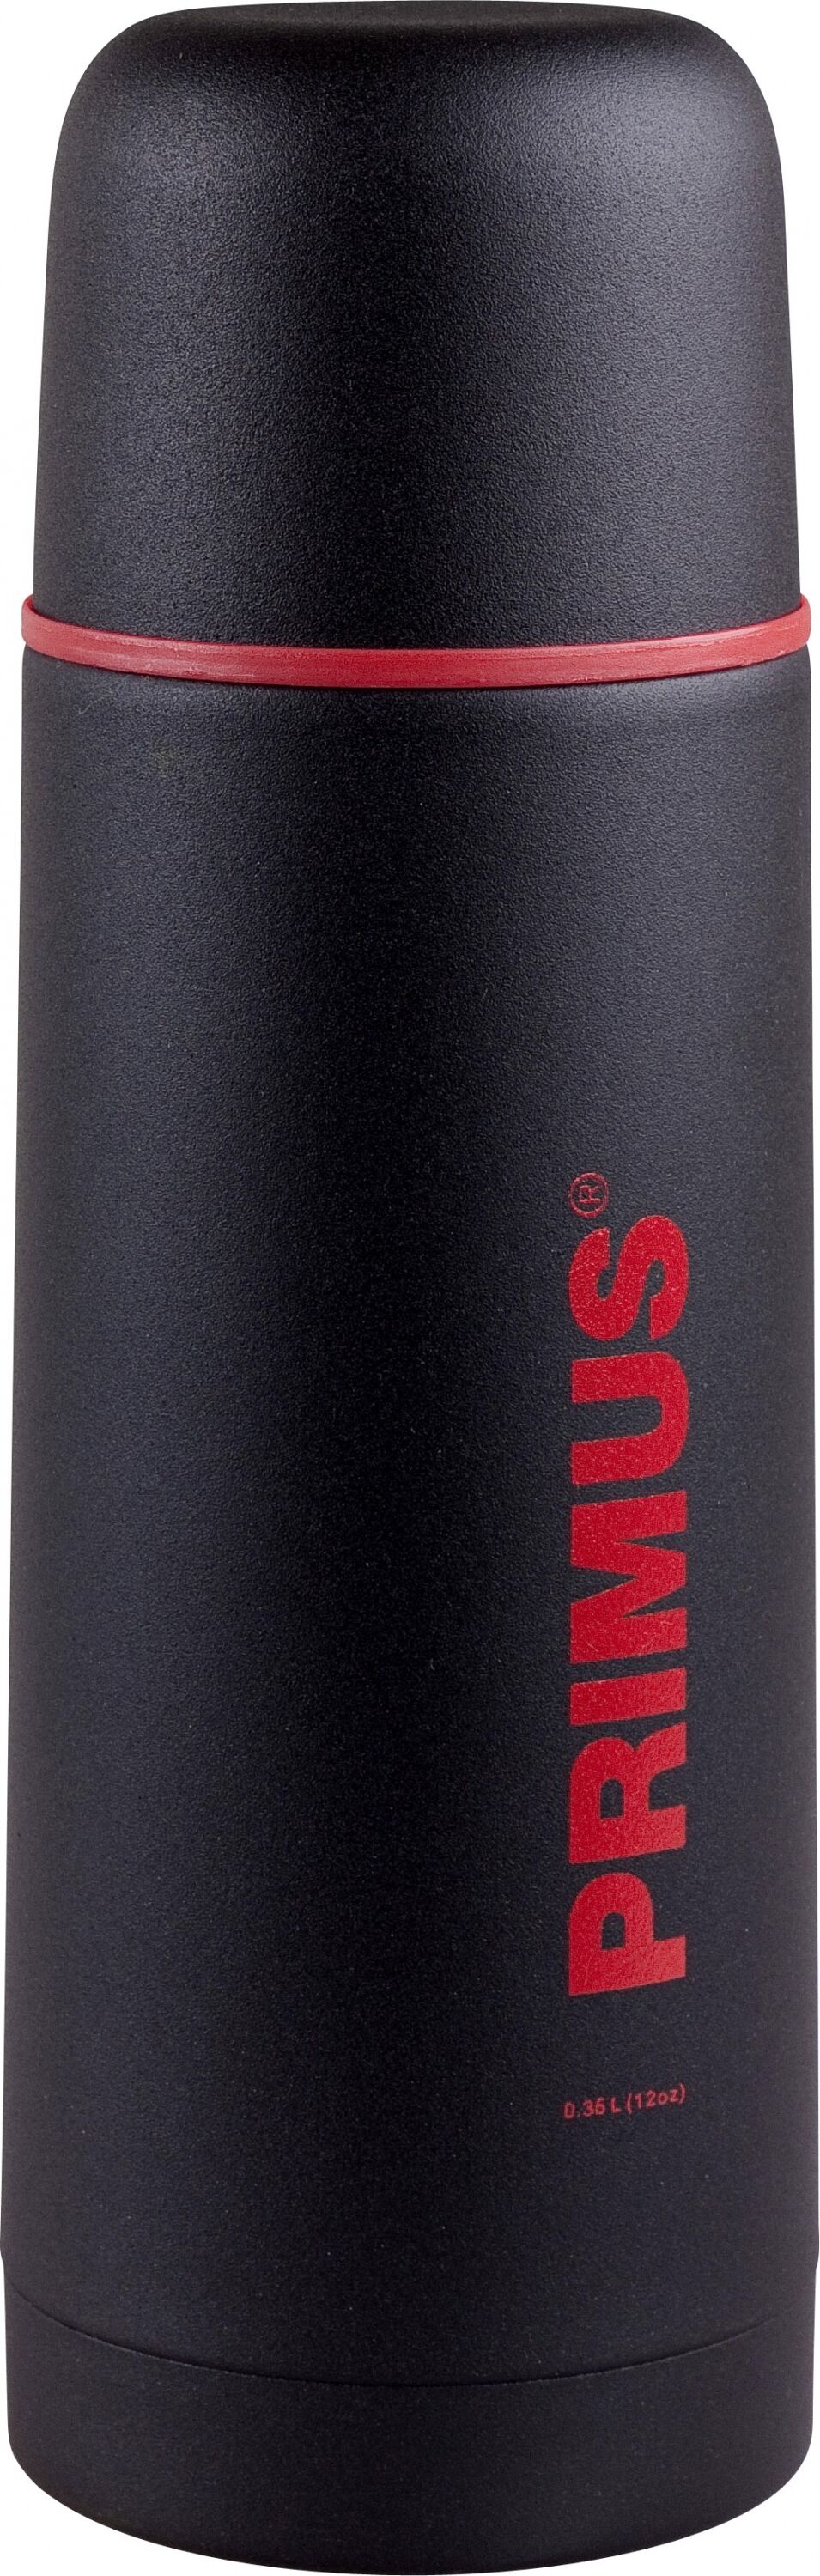 Primus Vacuum Bottle 0,35L termos Black 2021